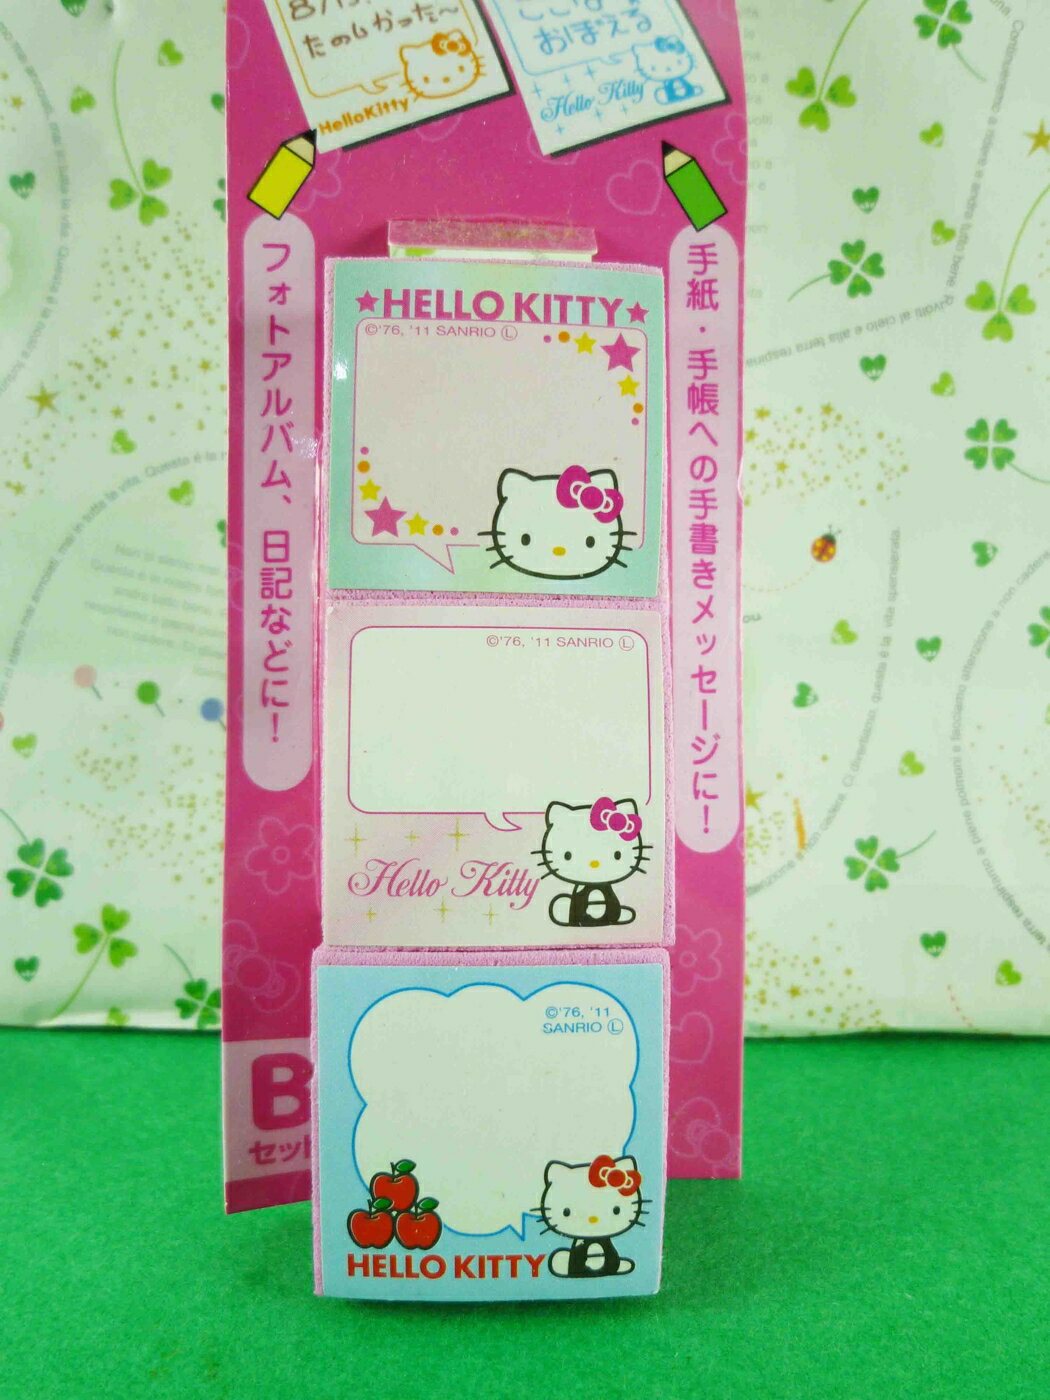 【震撼精品百貨】Hello Kitty 凱蒂貓 3入印章-藍色系 震撼日式精品百貨